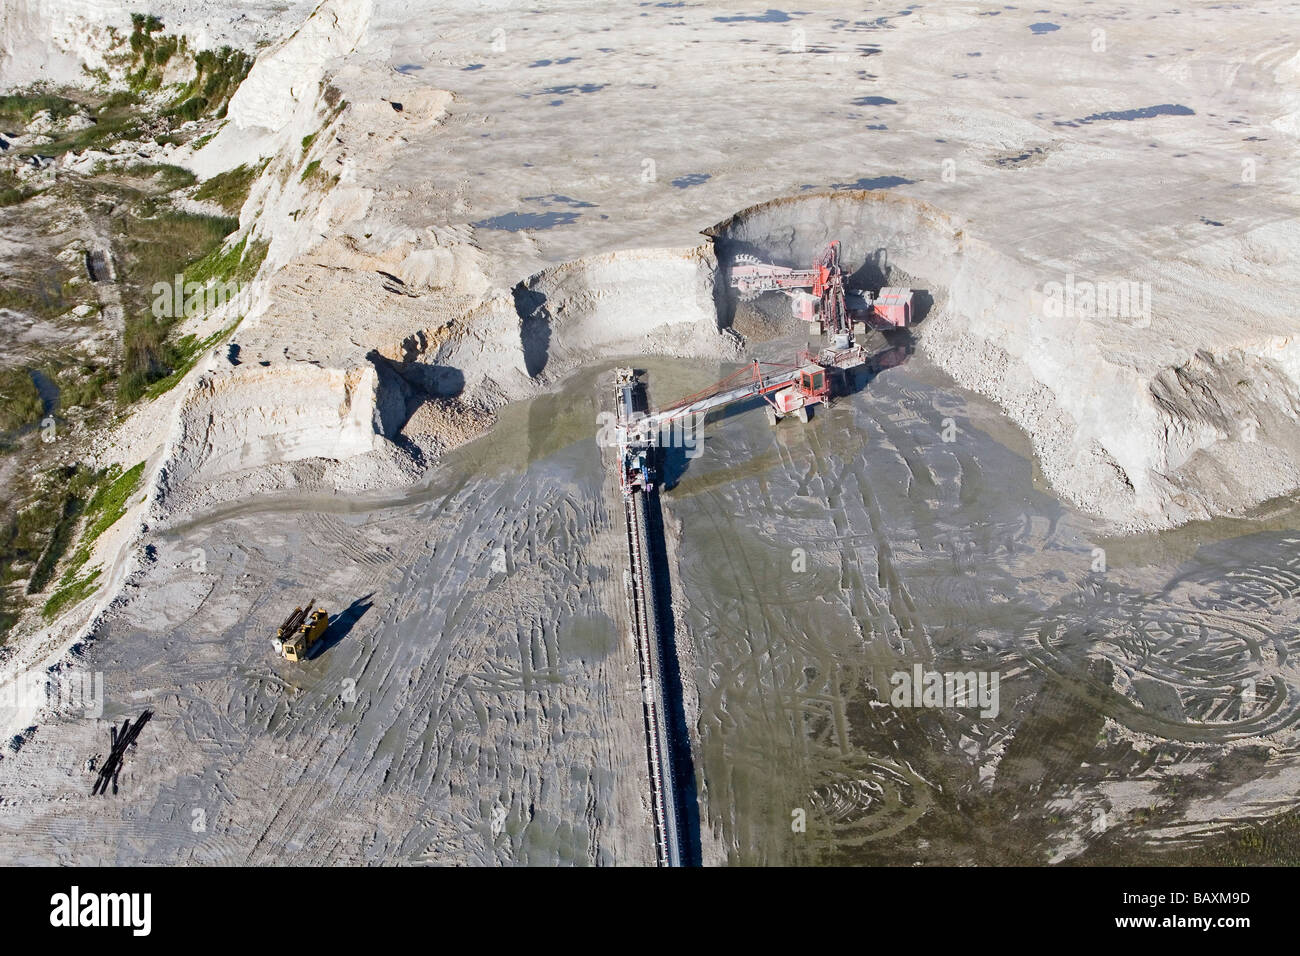 Vista aérea de la mina a cielo abierto y pala mecánica en un hoyo de marga, Misburg, Hannover, Baja Sajonia, en el norte de Alemania Foto de stock